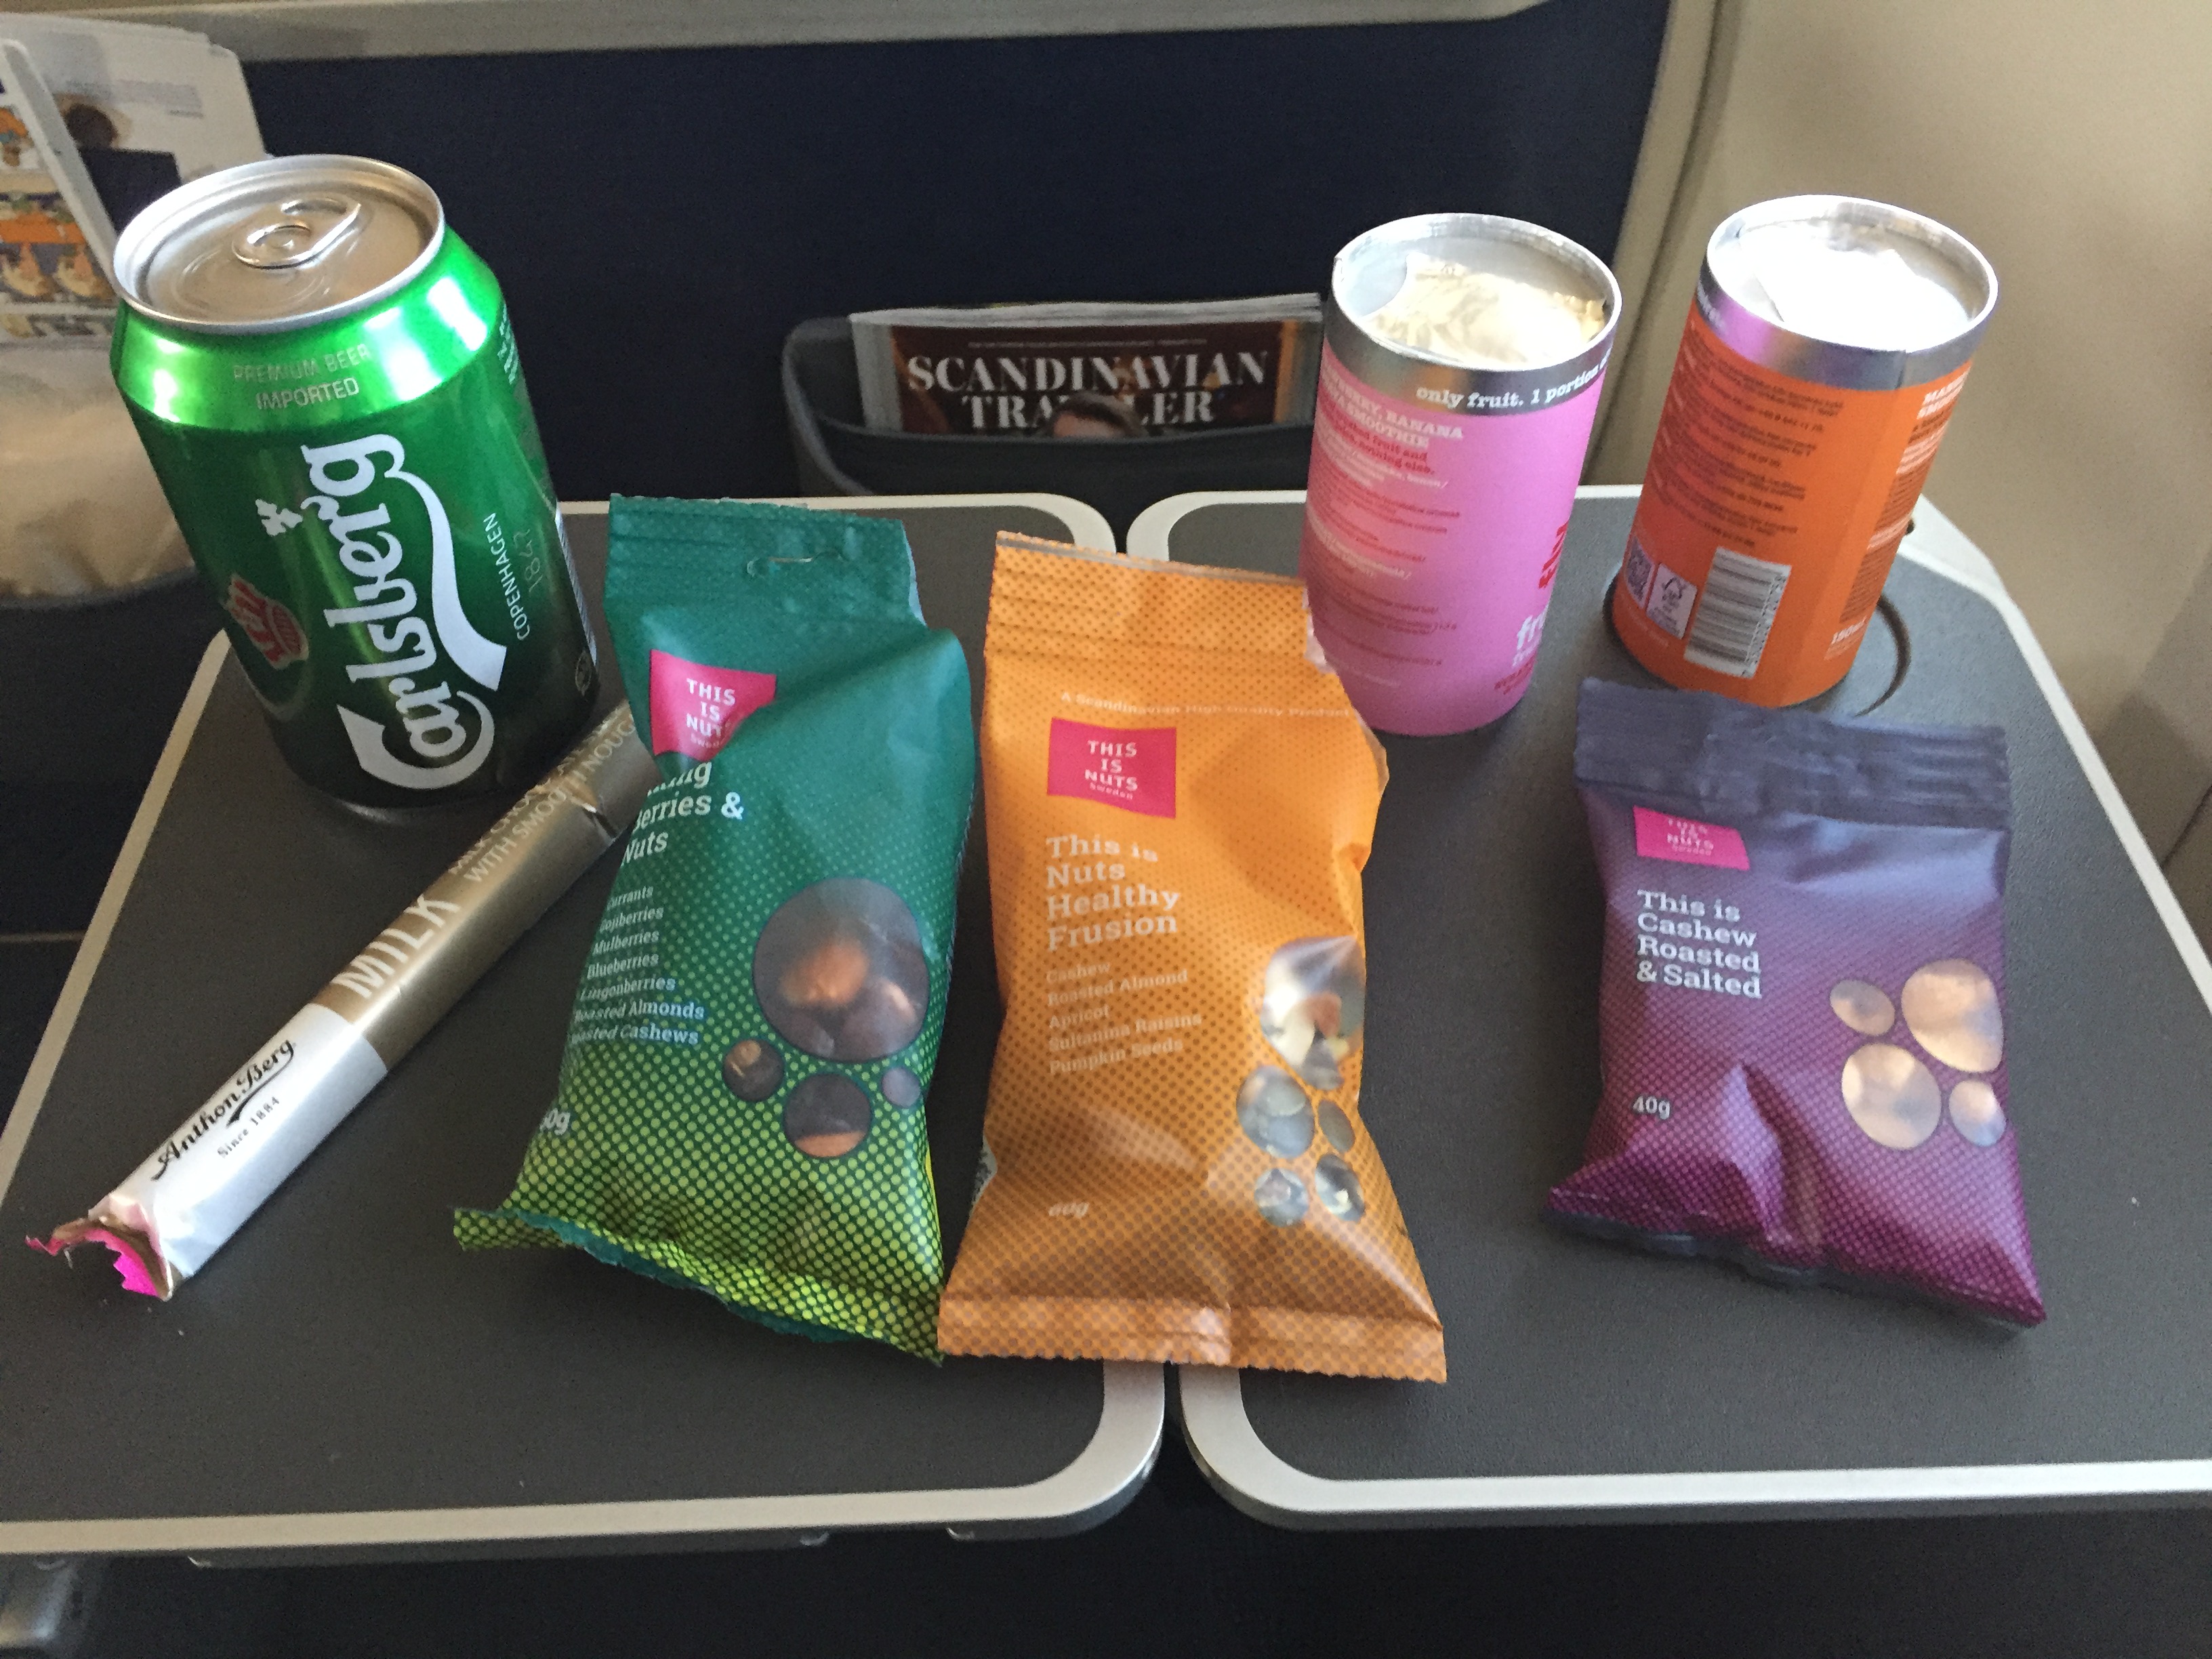 SAS flight snacks